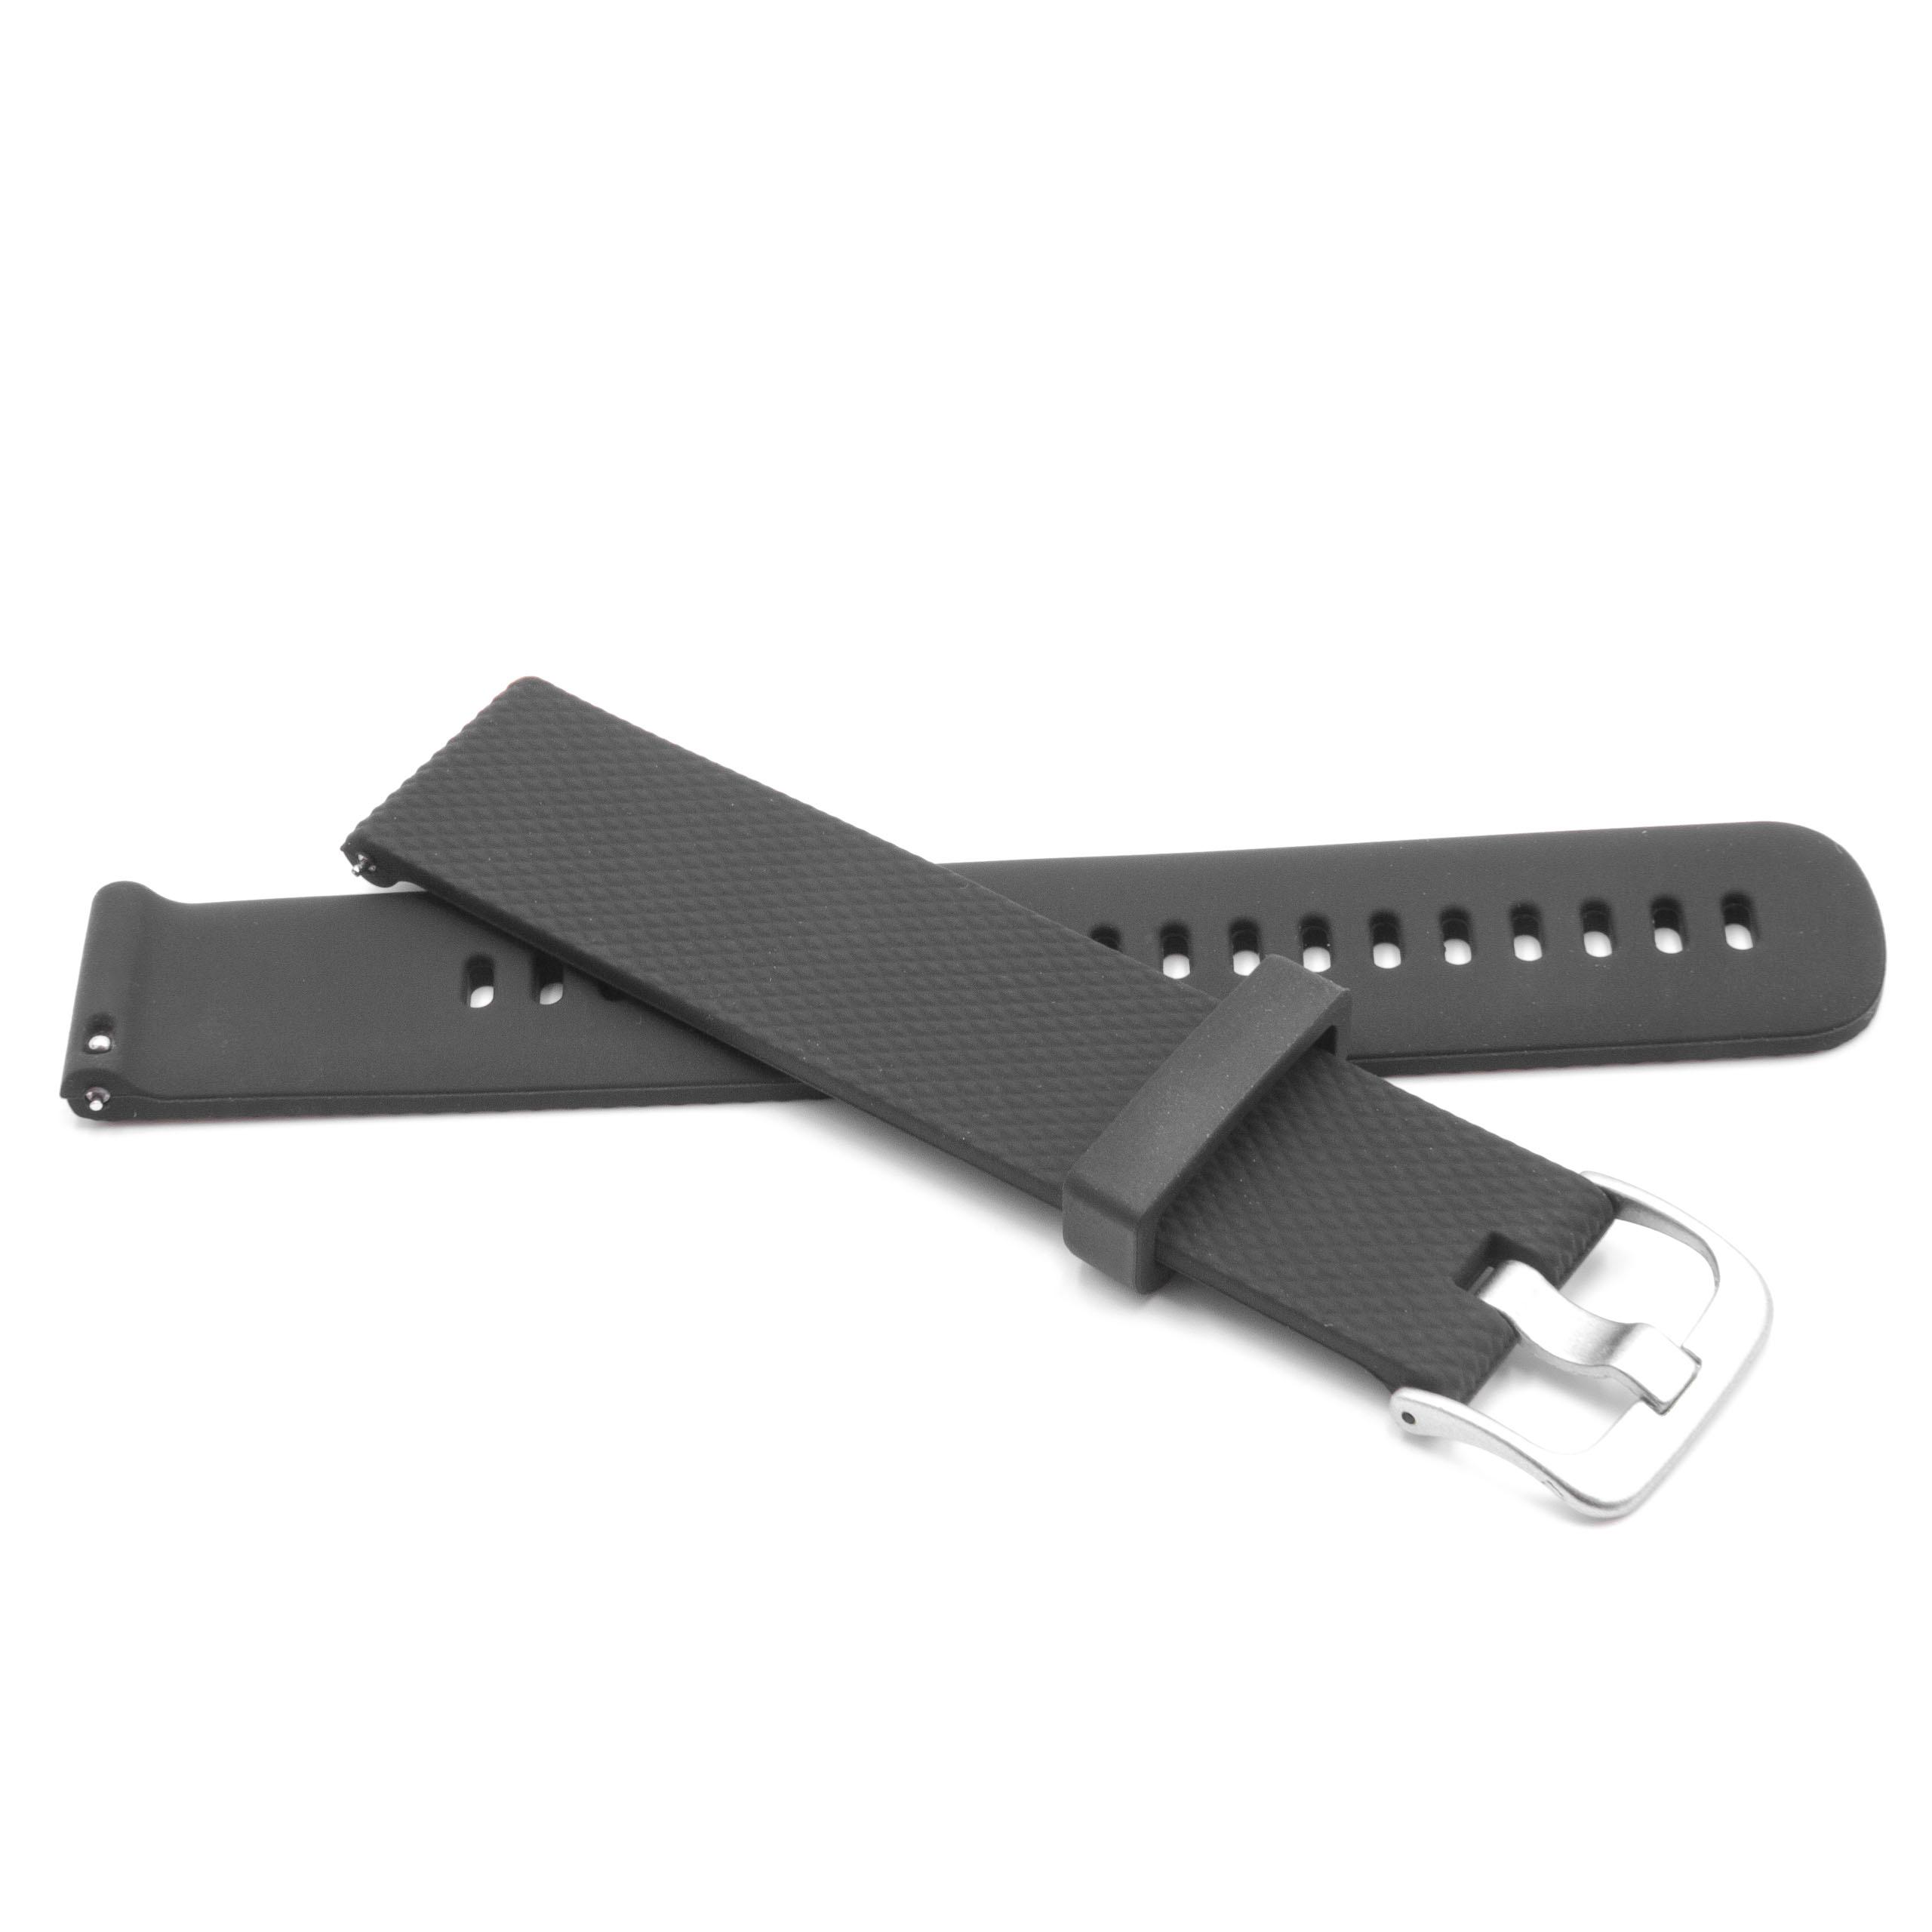 Armband für Garmin Smartwatch - 12,5 + 10,5 cm lang, 20mm breit, Silikon, schwarz